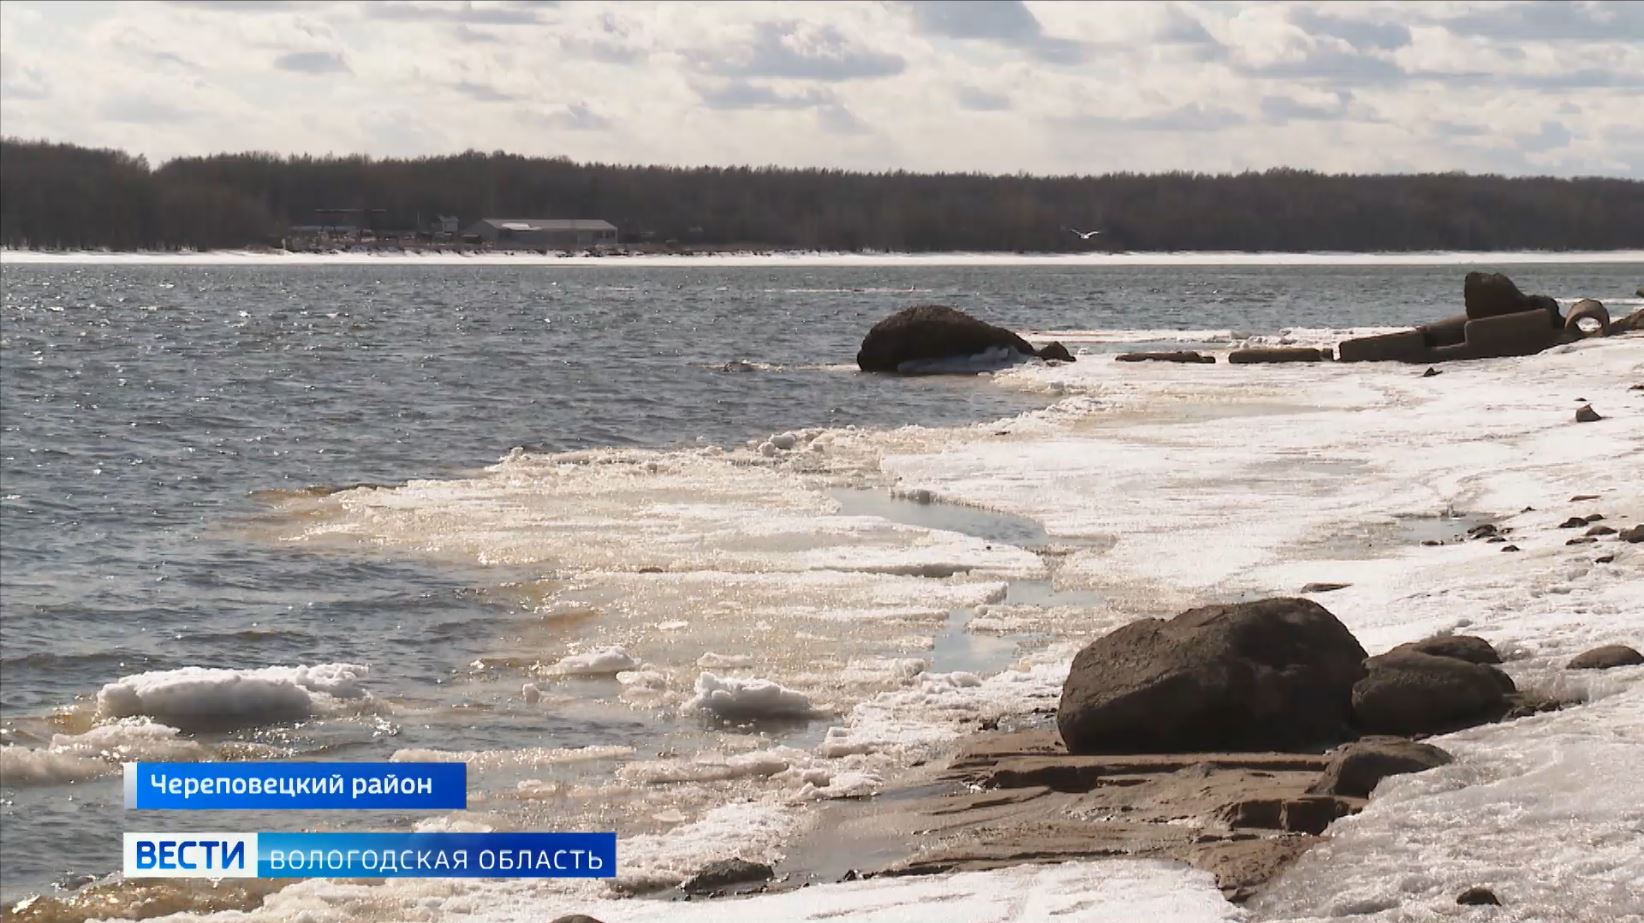 Запрет выхода на лед рыбинское водохранилище